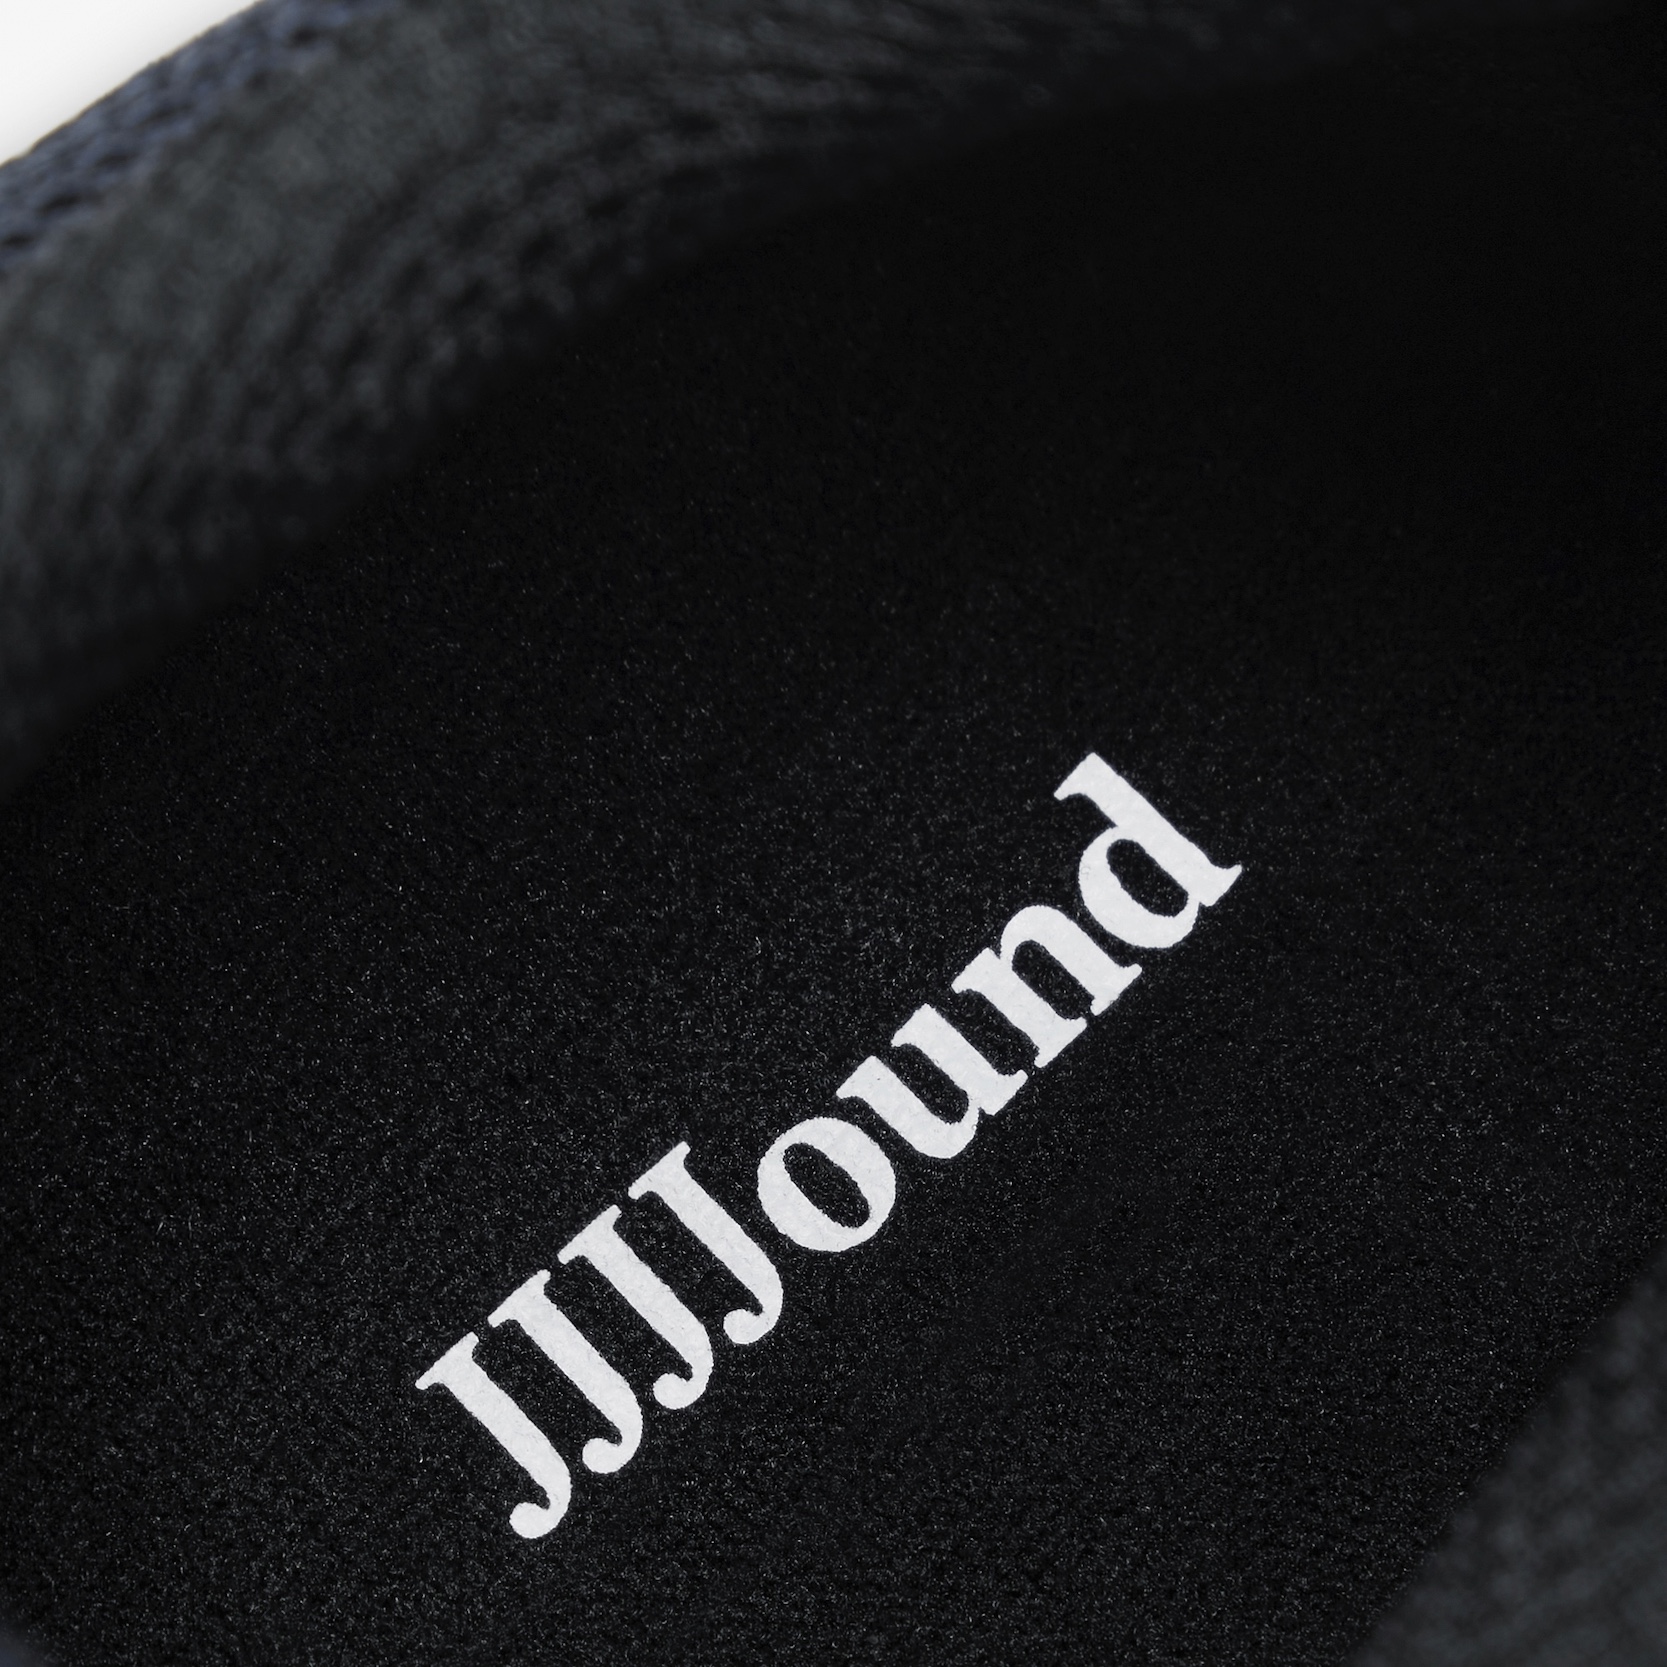 New Balance×JJJJound第2弾 シューレースロック付き990v4発売